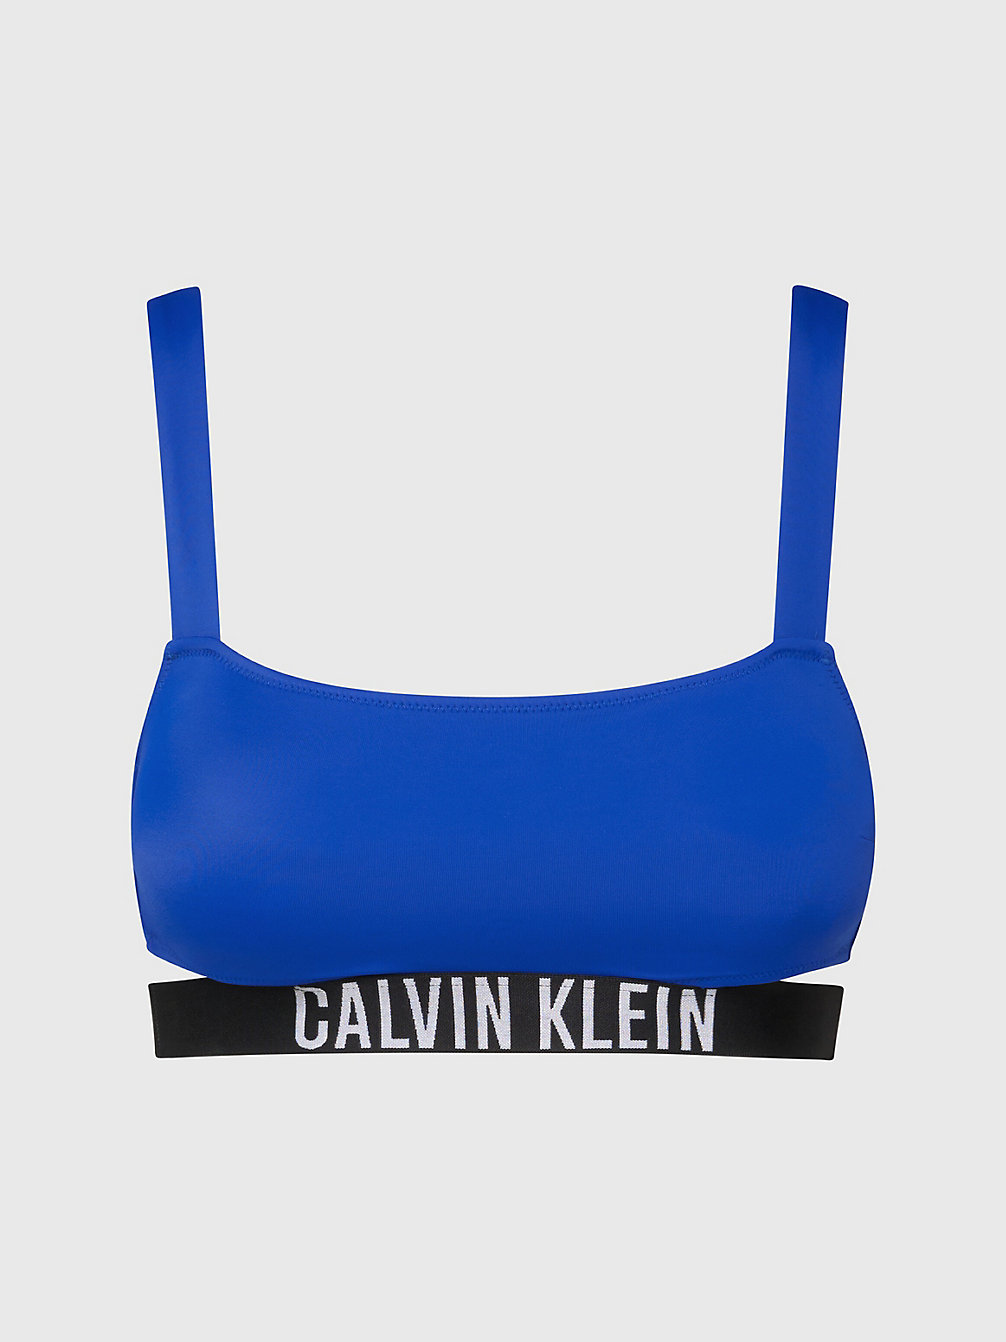 BISTRO BLUE > Bralette Bikinitop - Intense Power > undefined dames - Calvin Klein